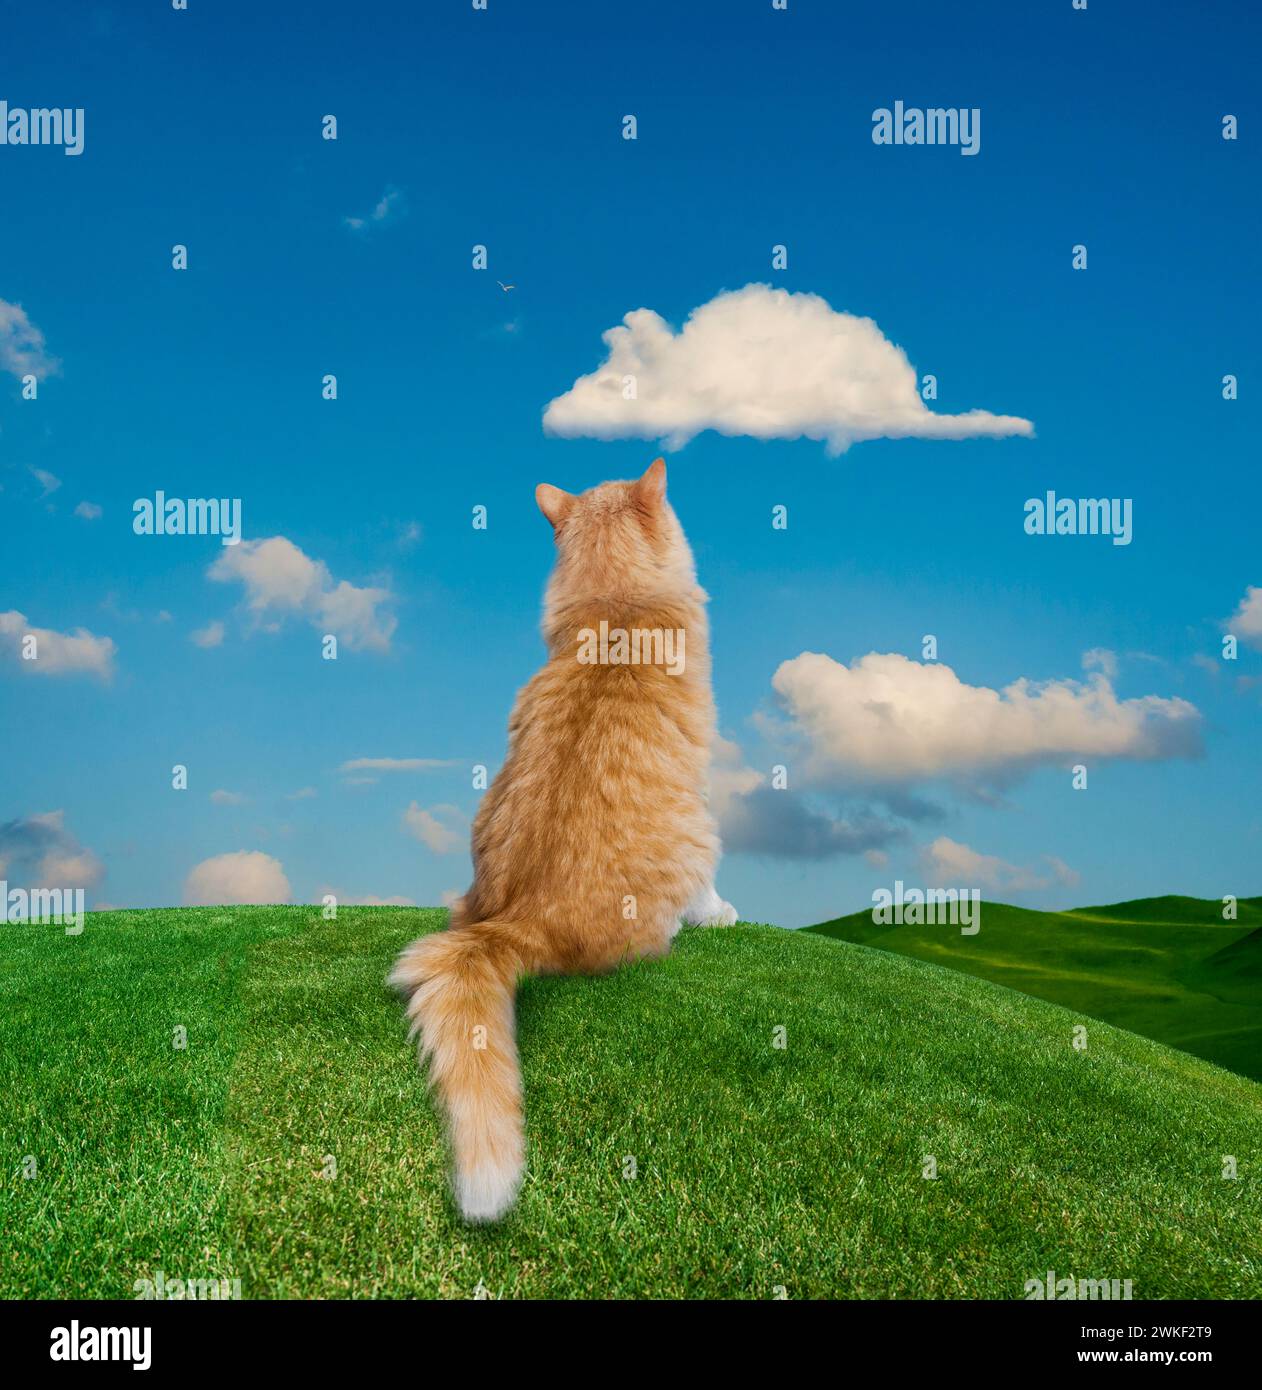 Un chat est assis sur un tricot d'herbe et regarde avec impatience un nuage en forme de souris dans une drôle de photo d'animal de compagnie sur les rêves, les désirs et les possibilités. Banque D'Images